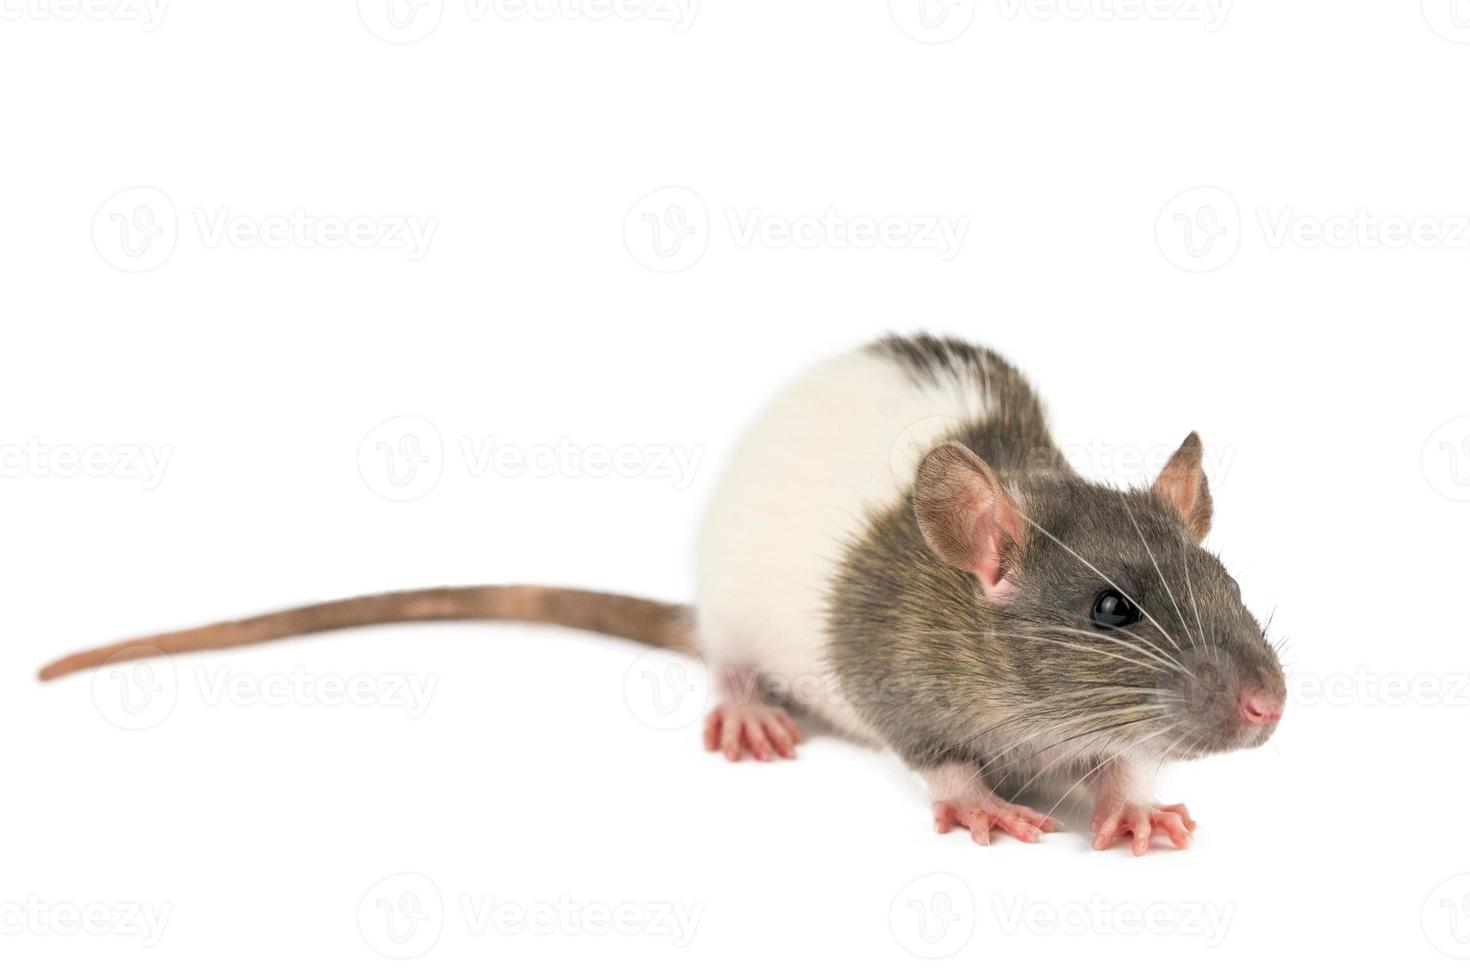 råtta på vit bakgrund foto